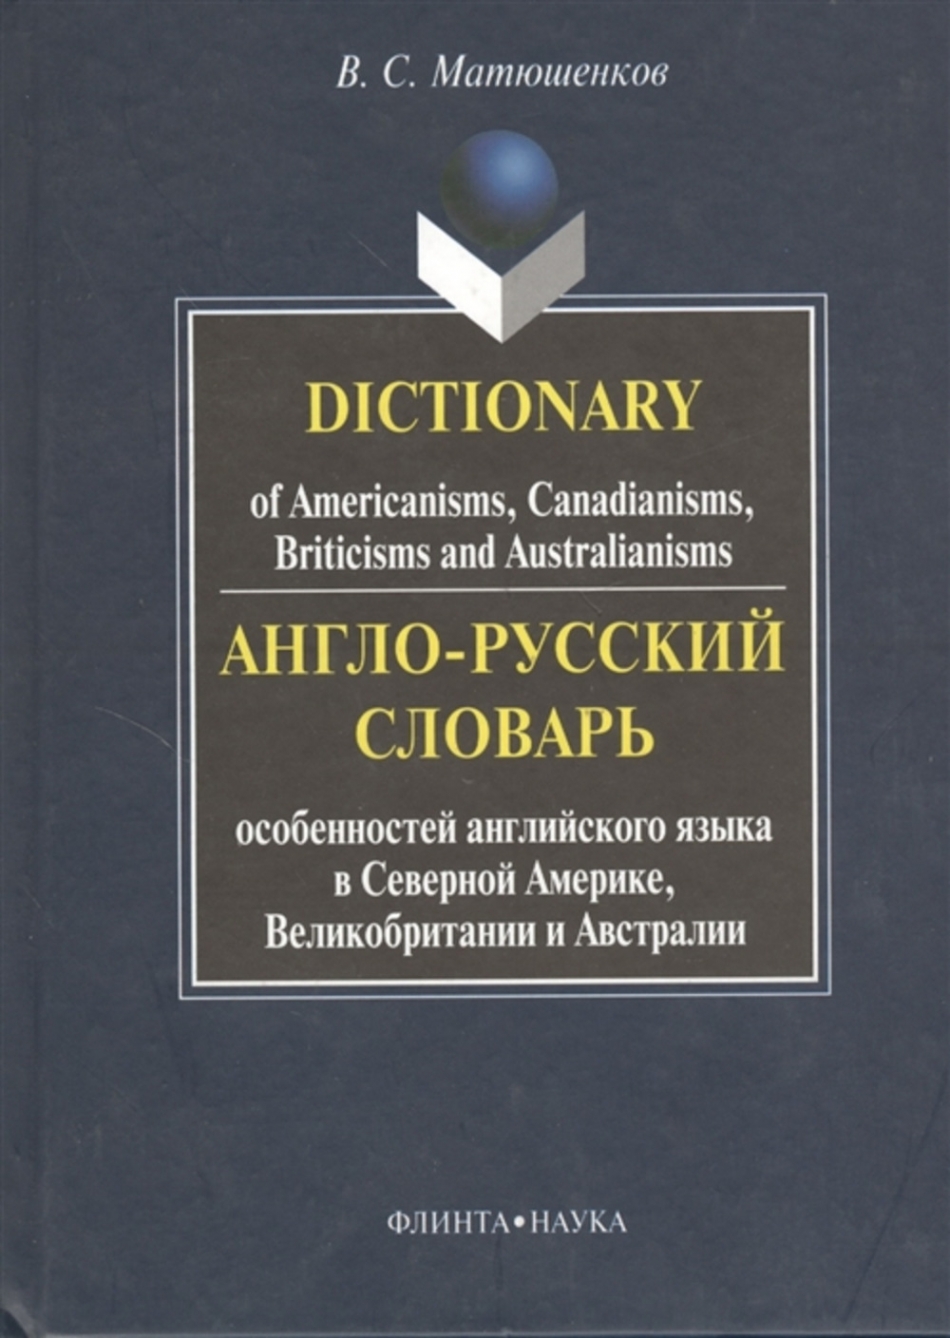 Матюшенков В.С. - Англо-русский словарь особенностей английского языка в Северной Америке, Великобритании и Австралии 